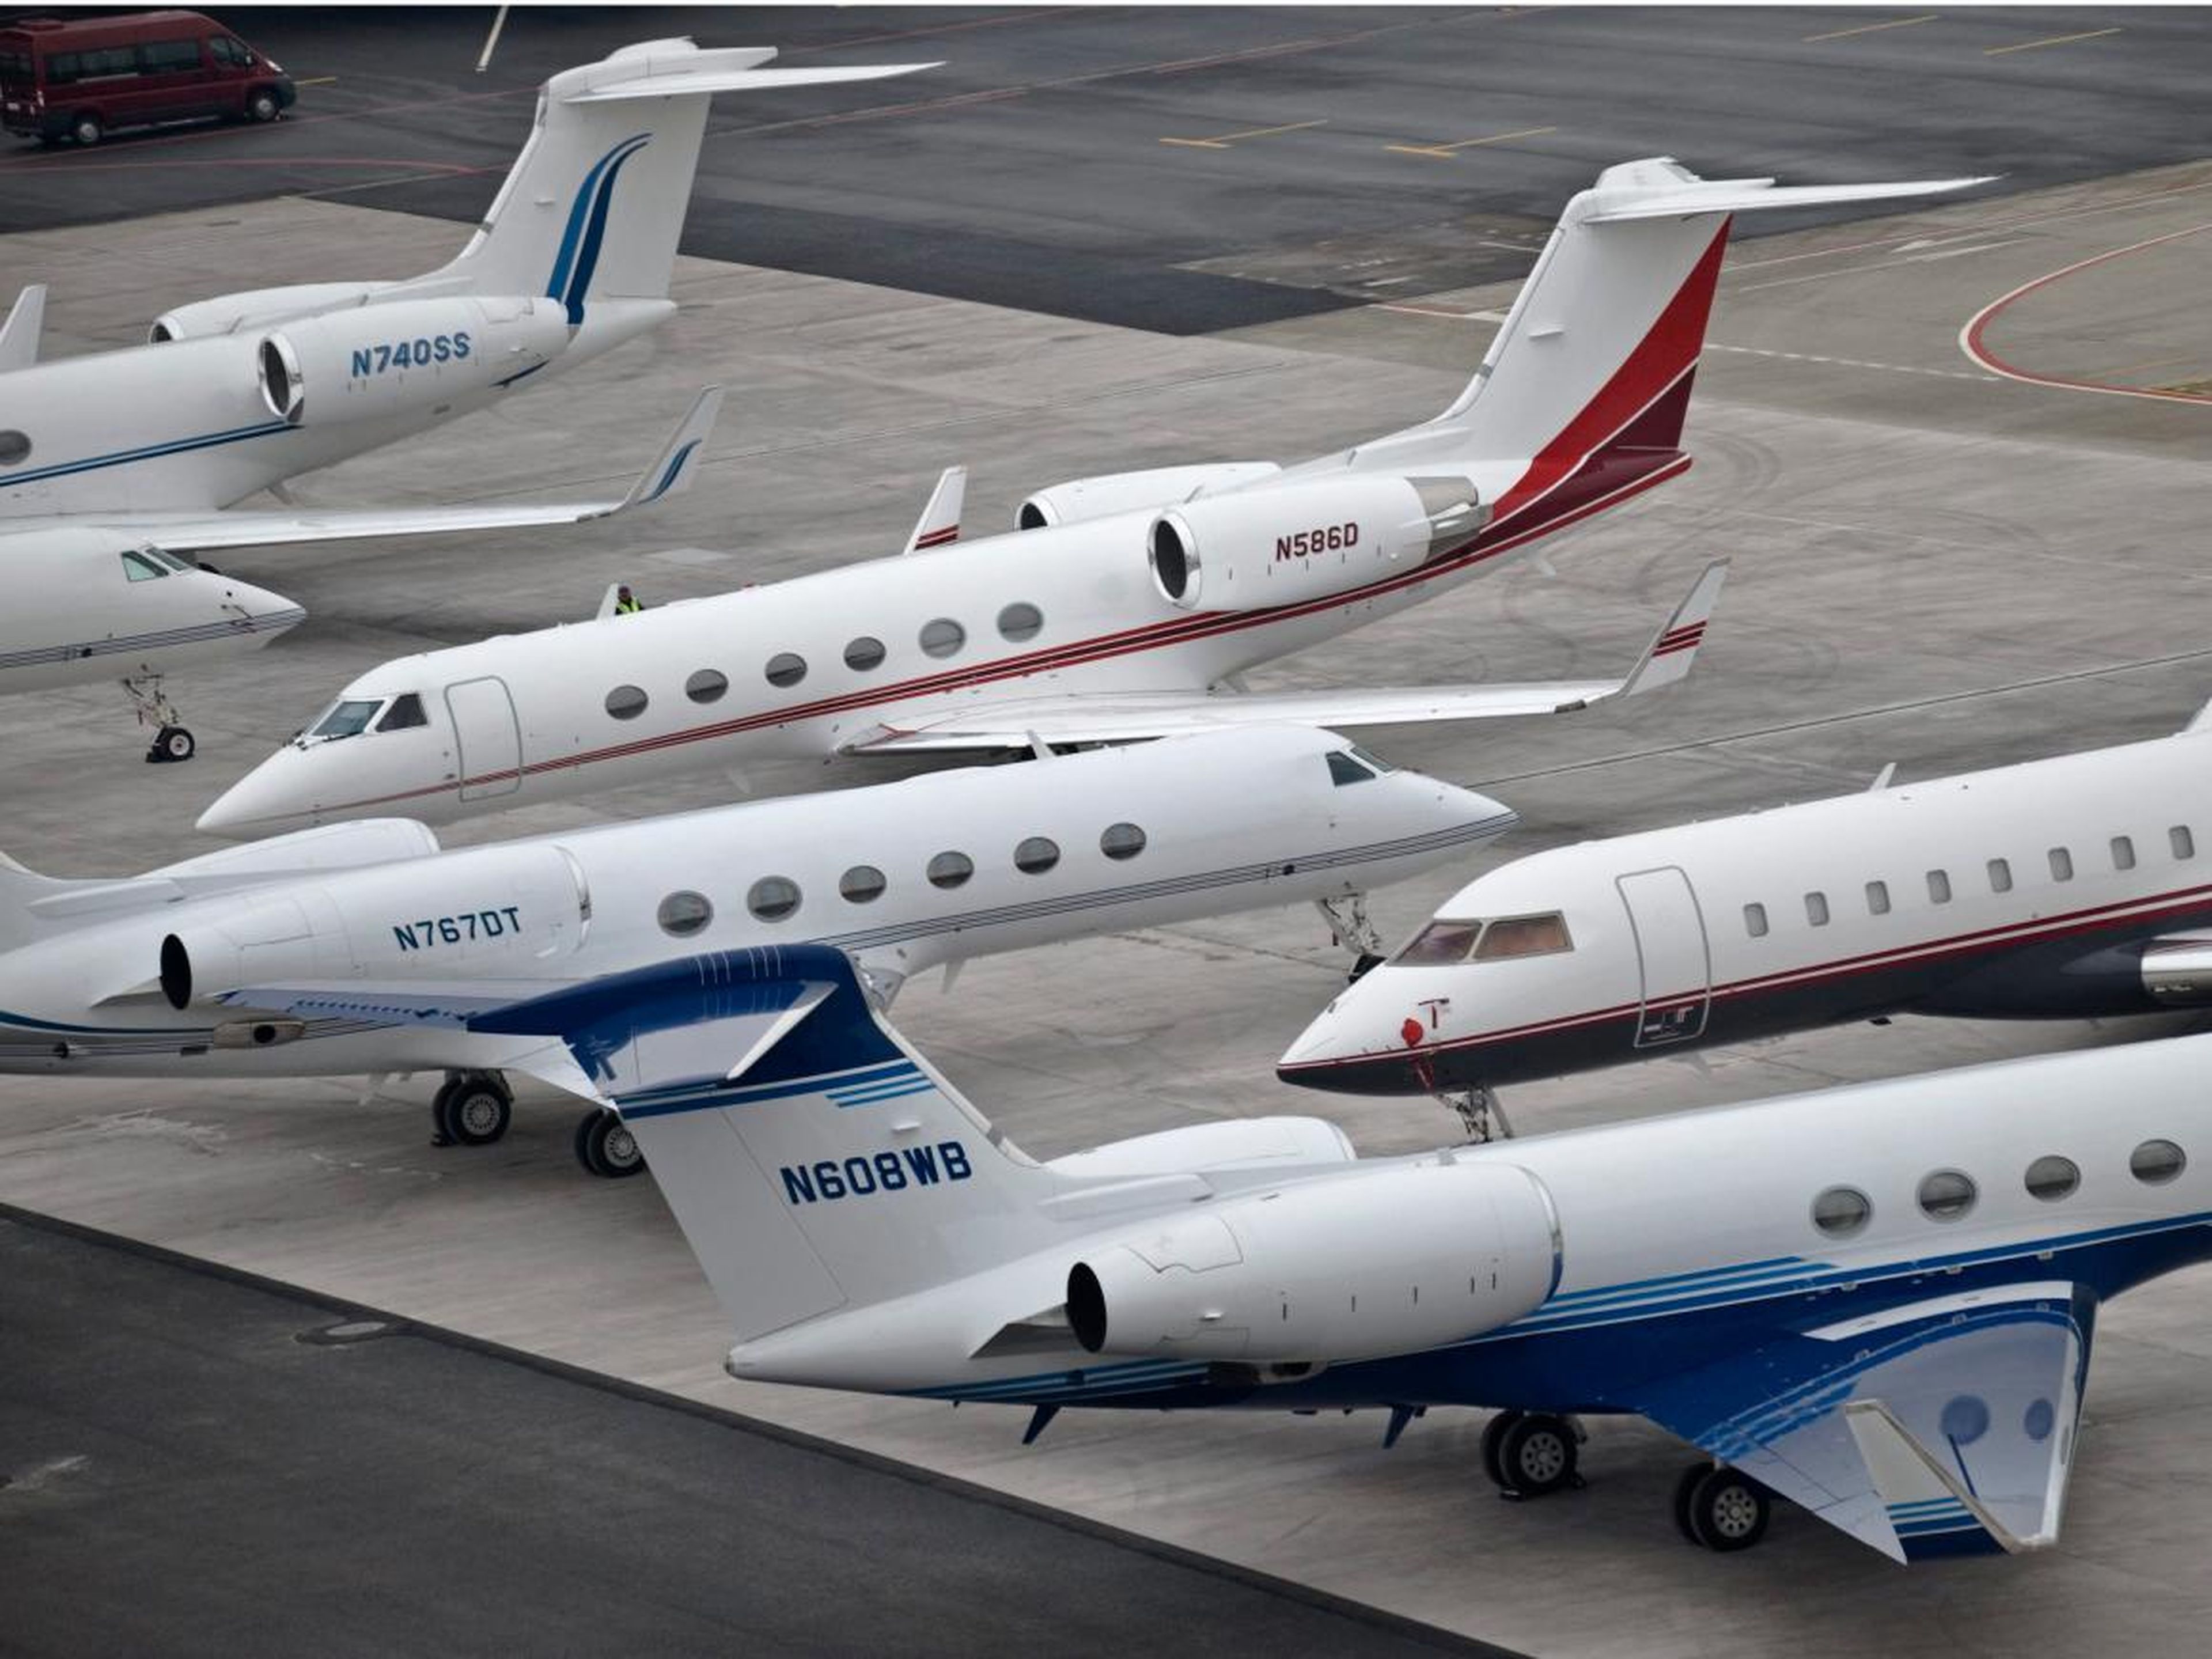 Jets privados en Davos en 2009. Unos cuantos jets Gulfstream y un Bombardier a la vista.